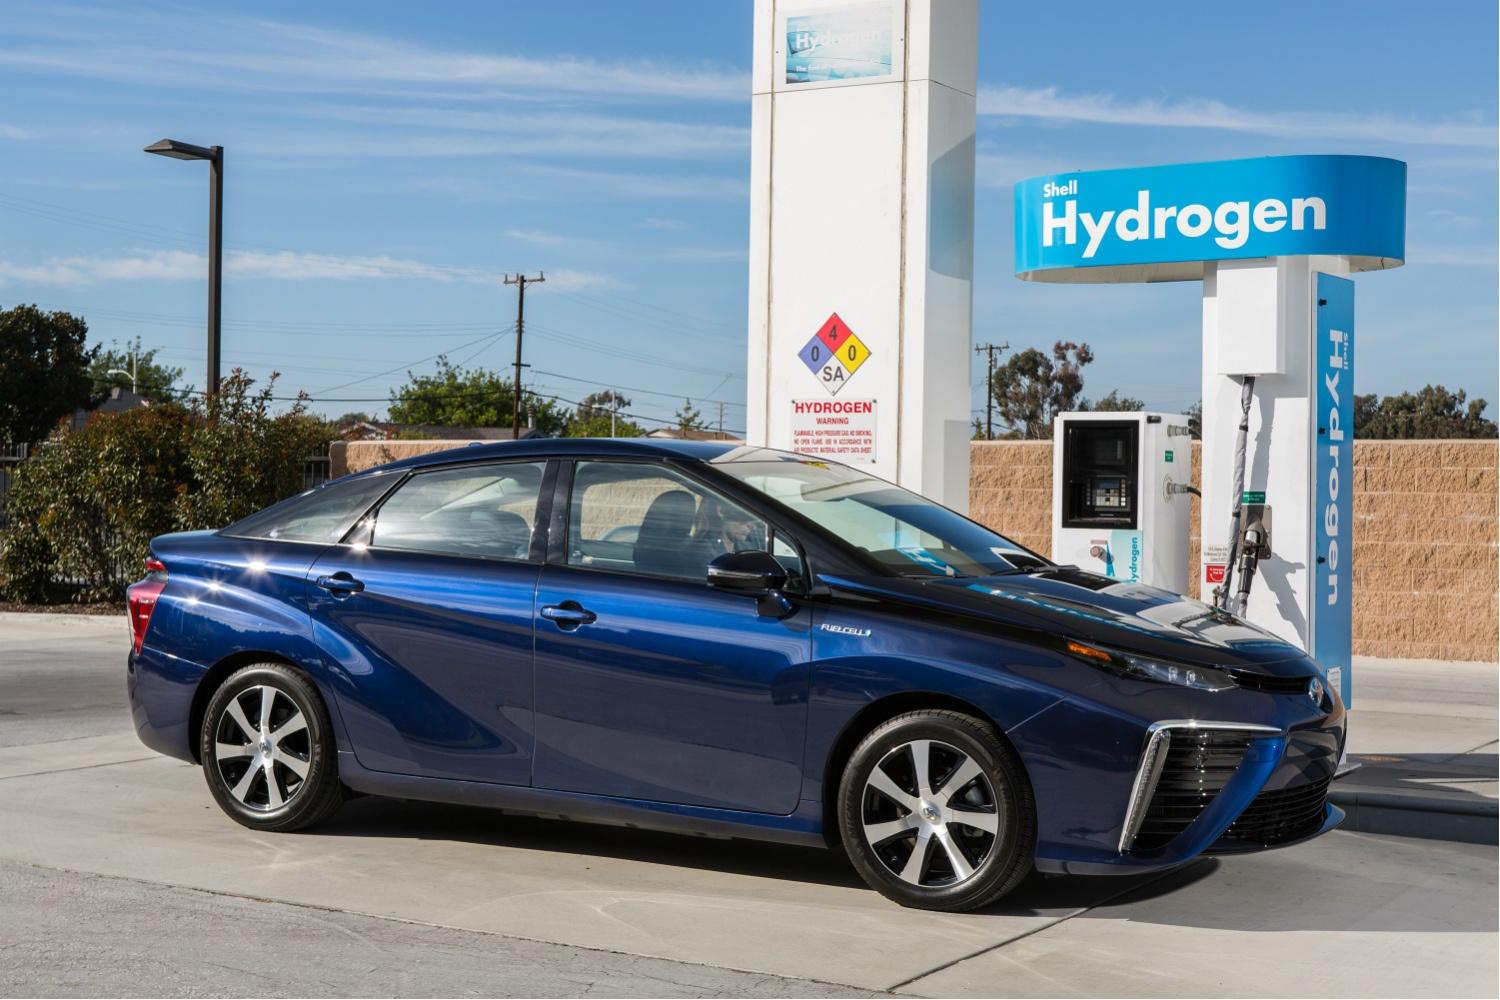 Polnjenje avtomobila z vodikom. Kako uporabljati distributerja? (video)